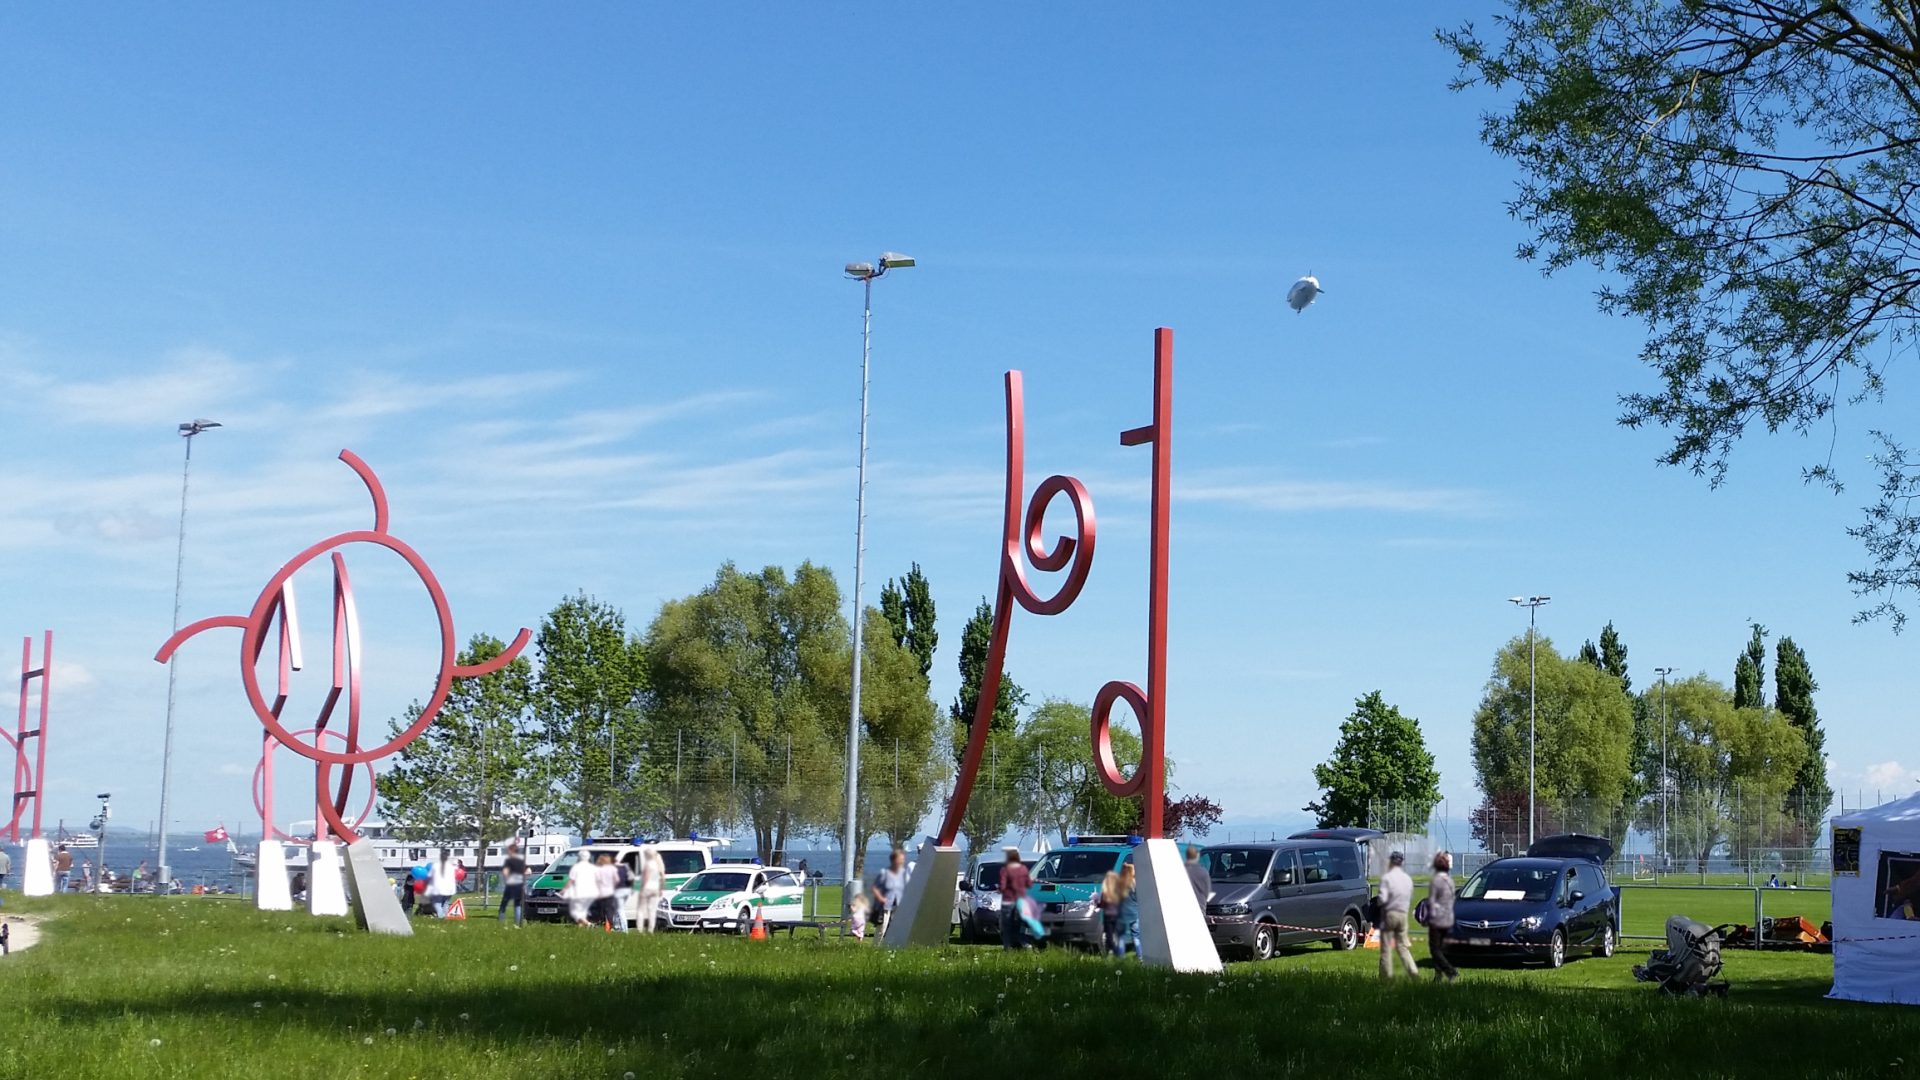 Messe, parkende Fahrzeuge, auch des deutschen Zolls am Rand einer grünen Wiese, vorn die verschiedenen roten Metallskulpturen der Kunstgrenze, im Hintergrund der See, ein Dampfer mit schweizer Fahne